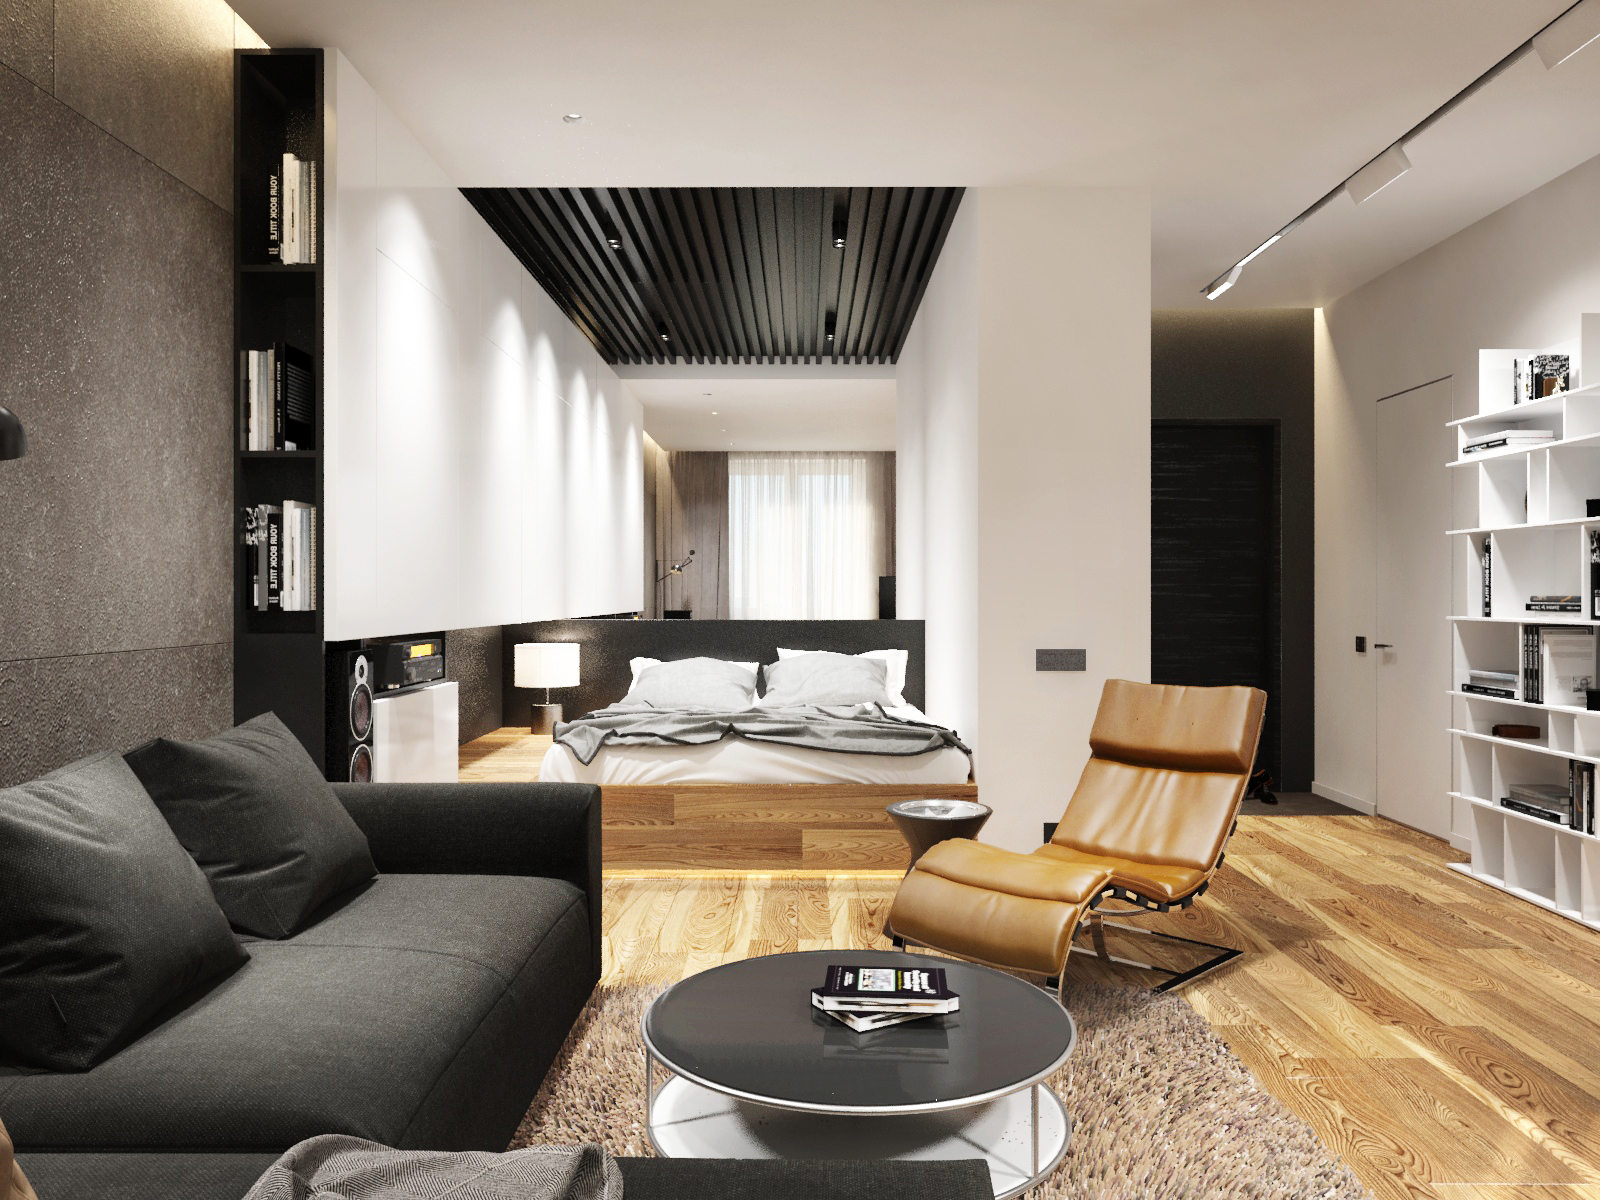 Дизайн двухкомнатной квартиры 50 кв.м: оформляем каждую комнату